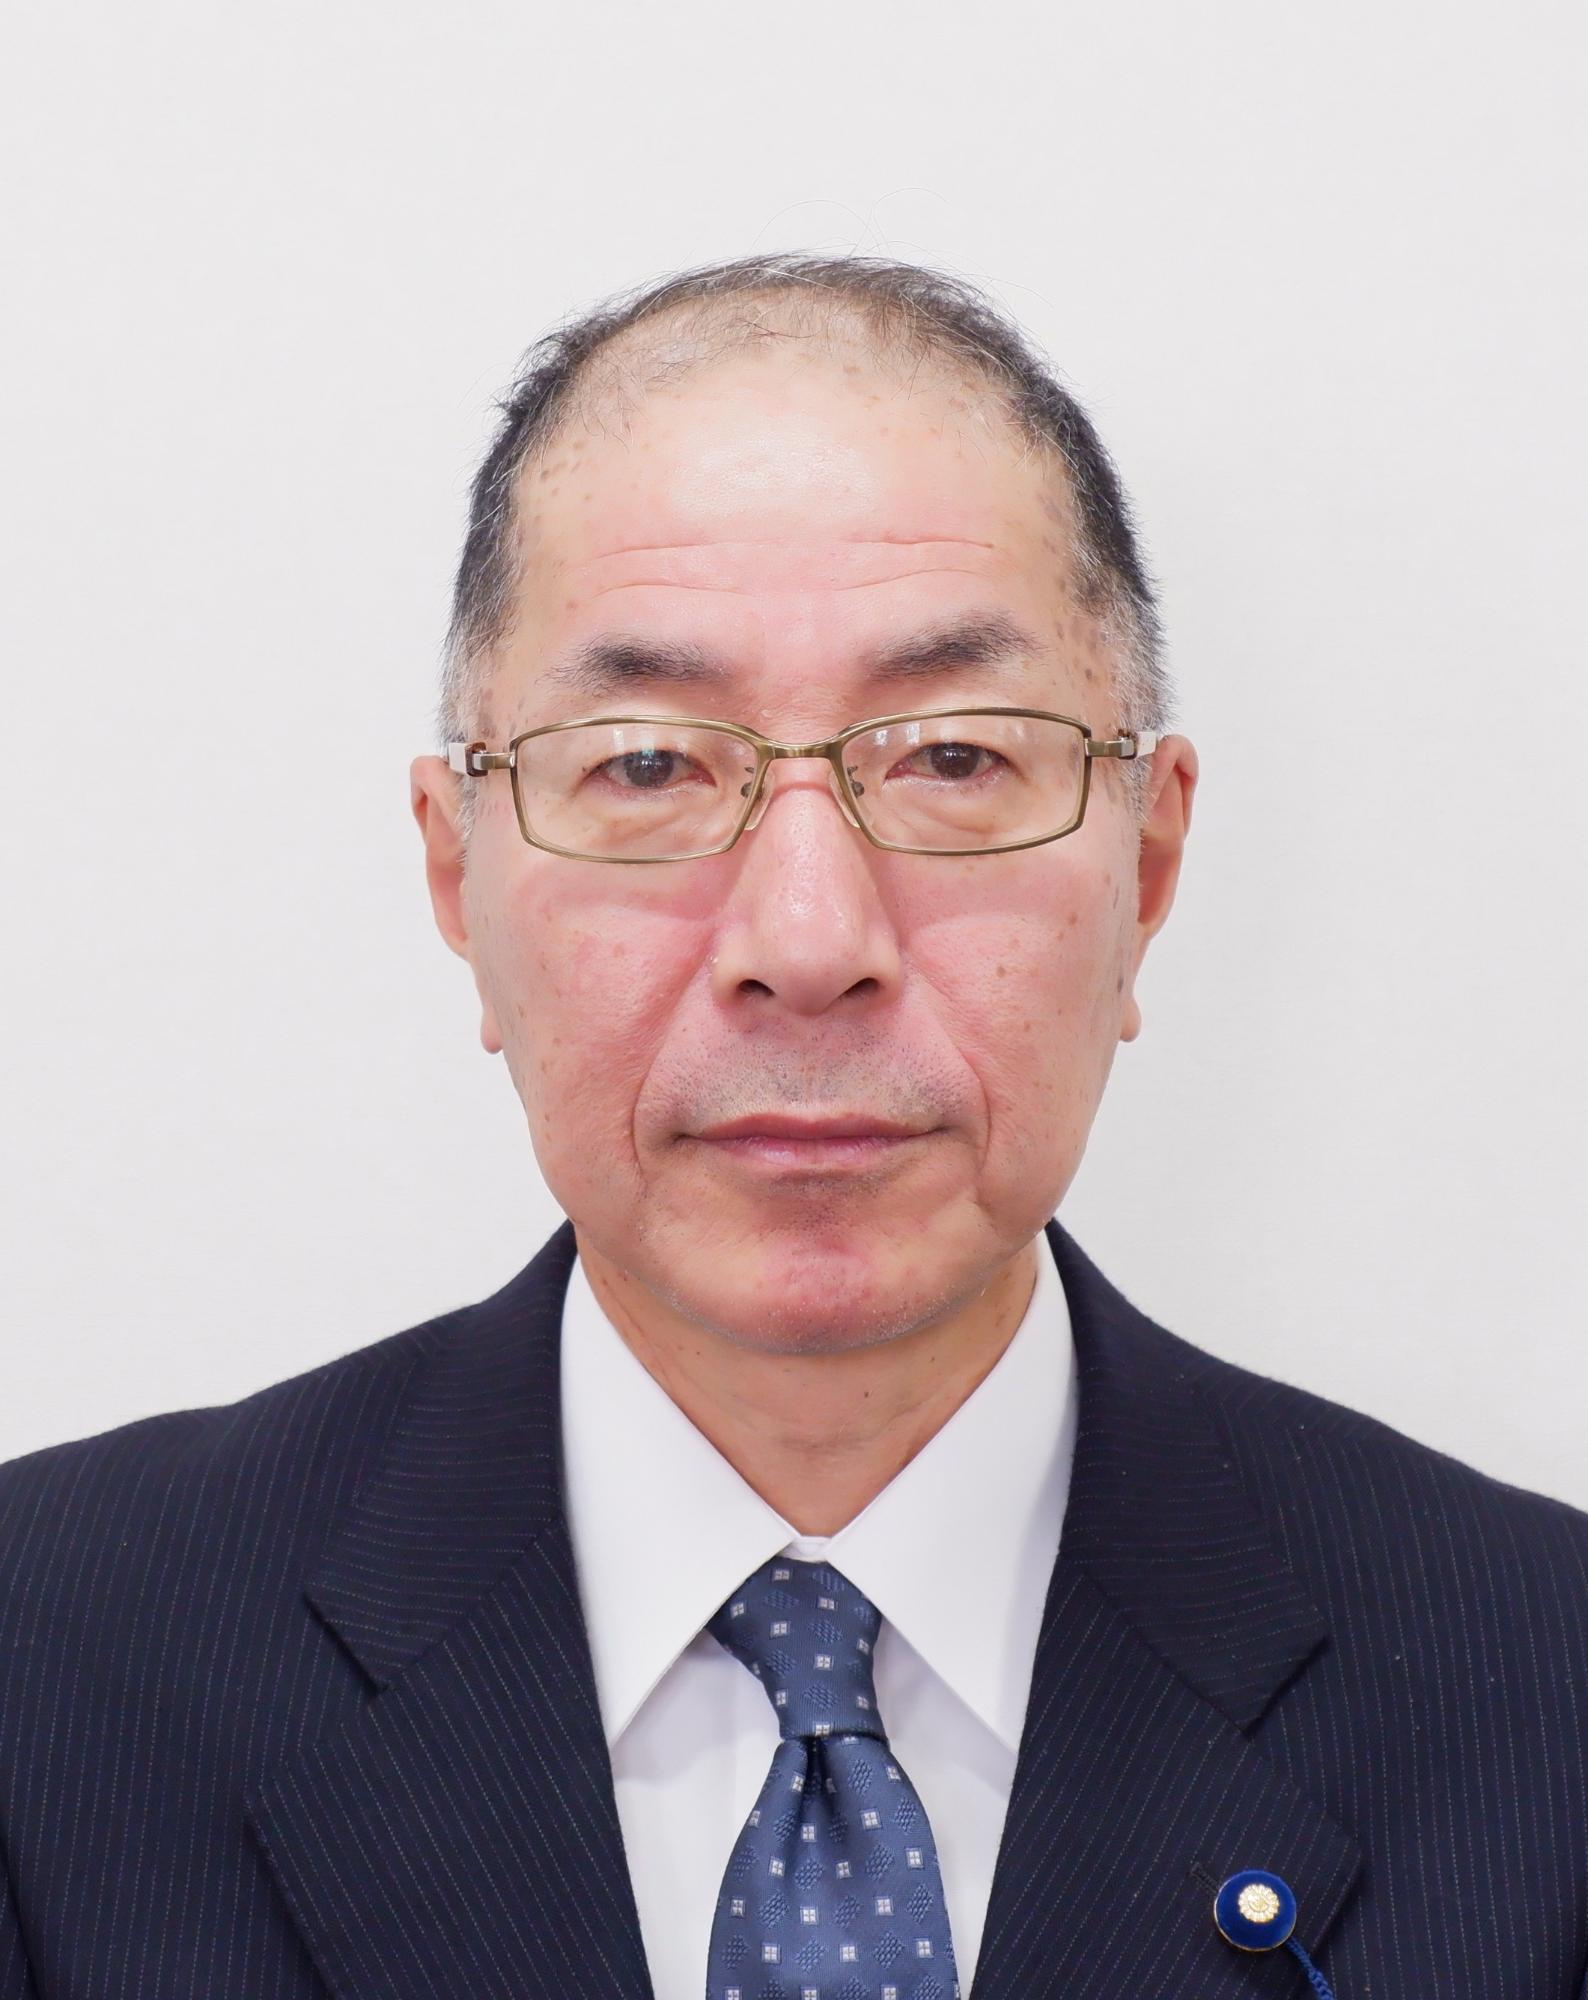 上野 雅央議員の顔写真